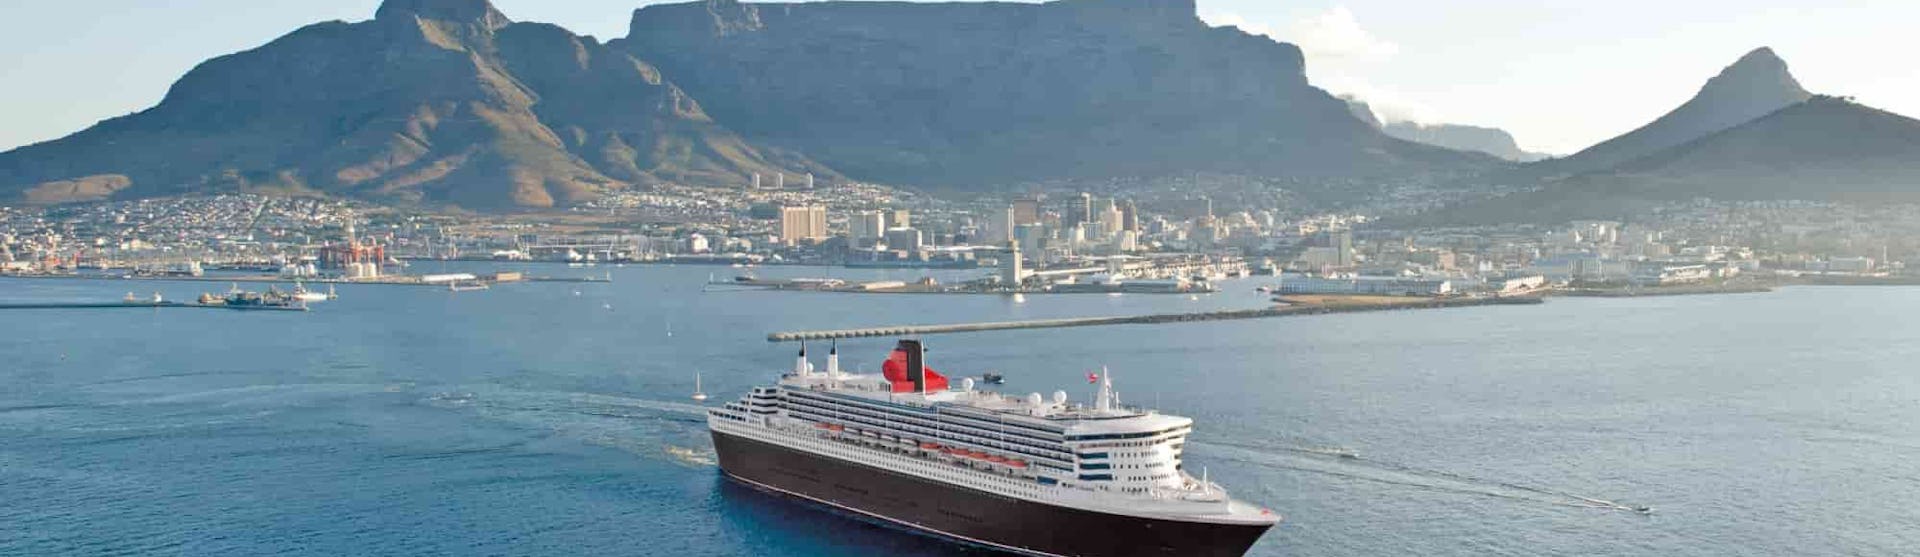 Cunard, Queen Mary 2